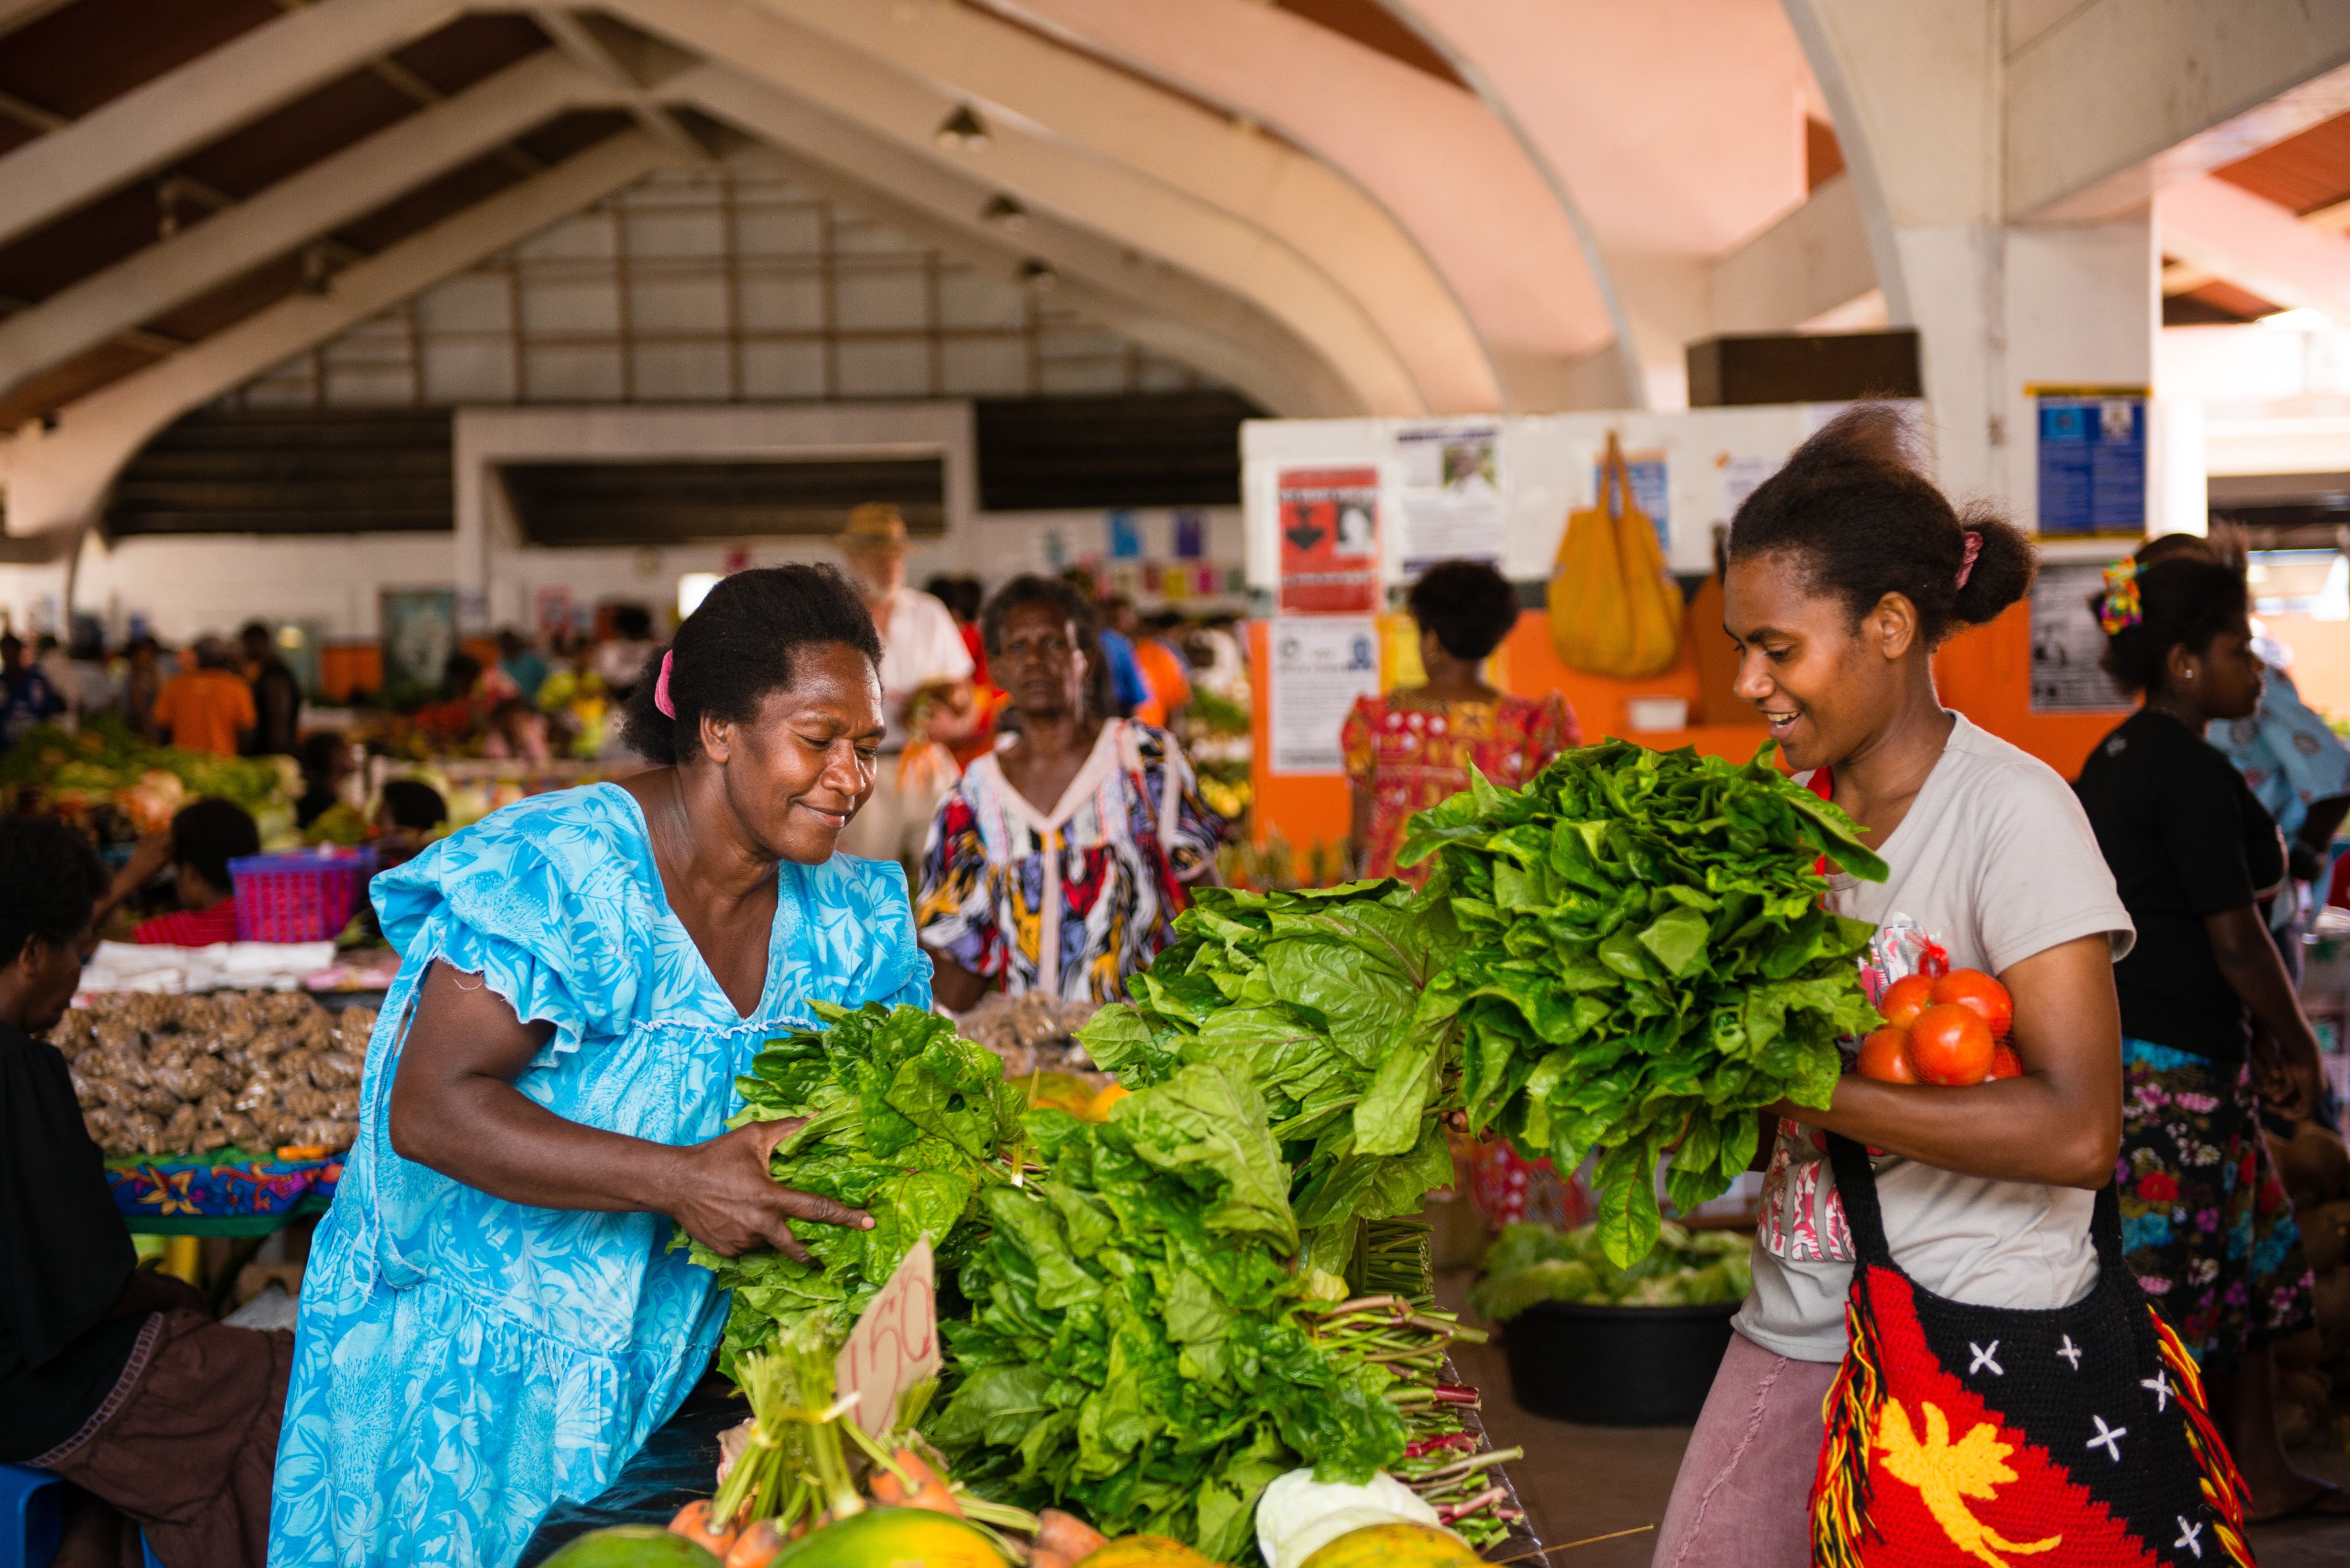 Women in the market